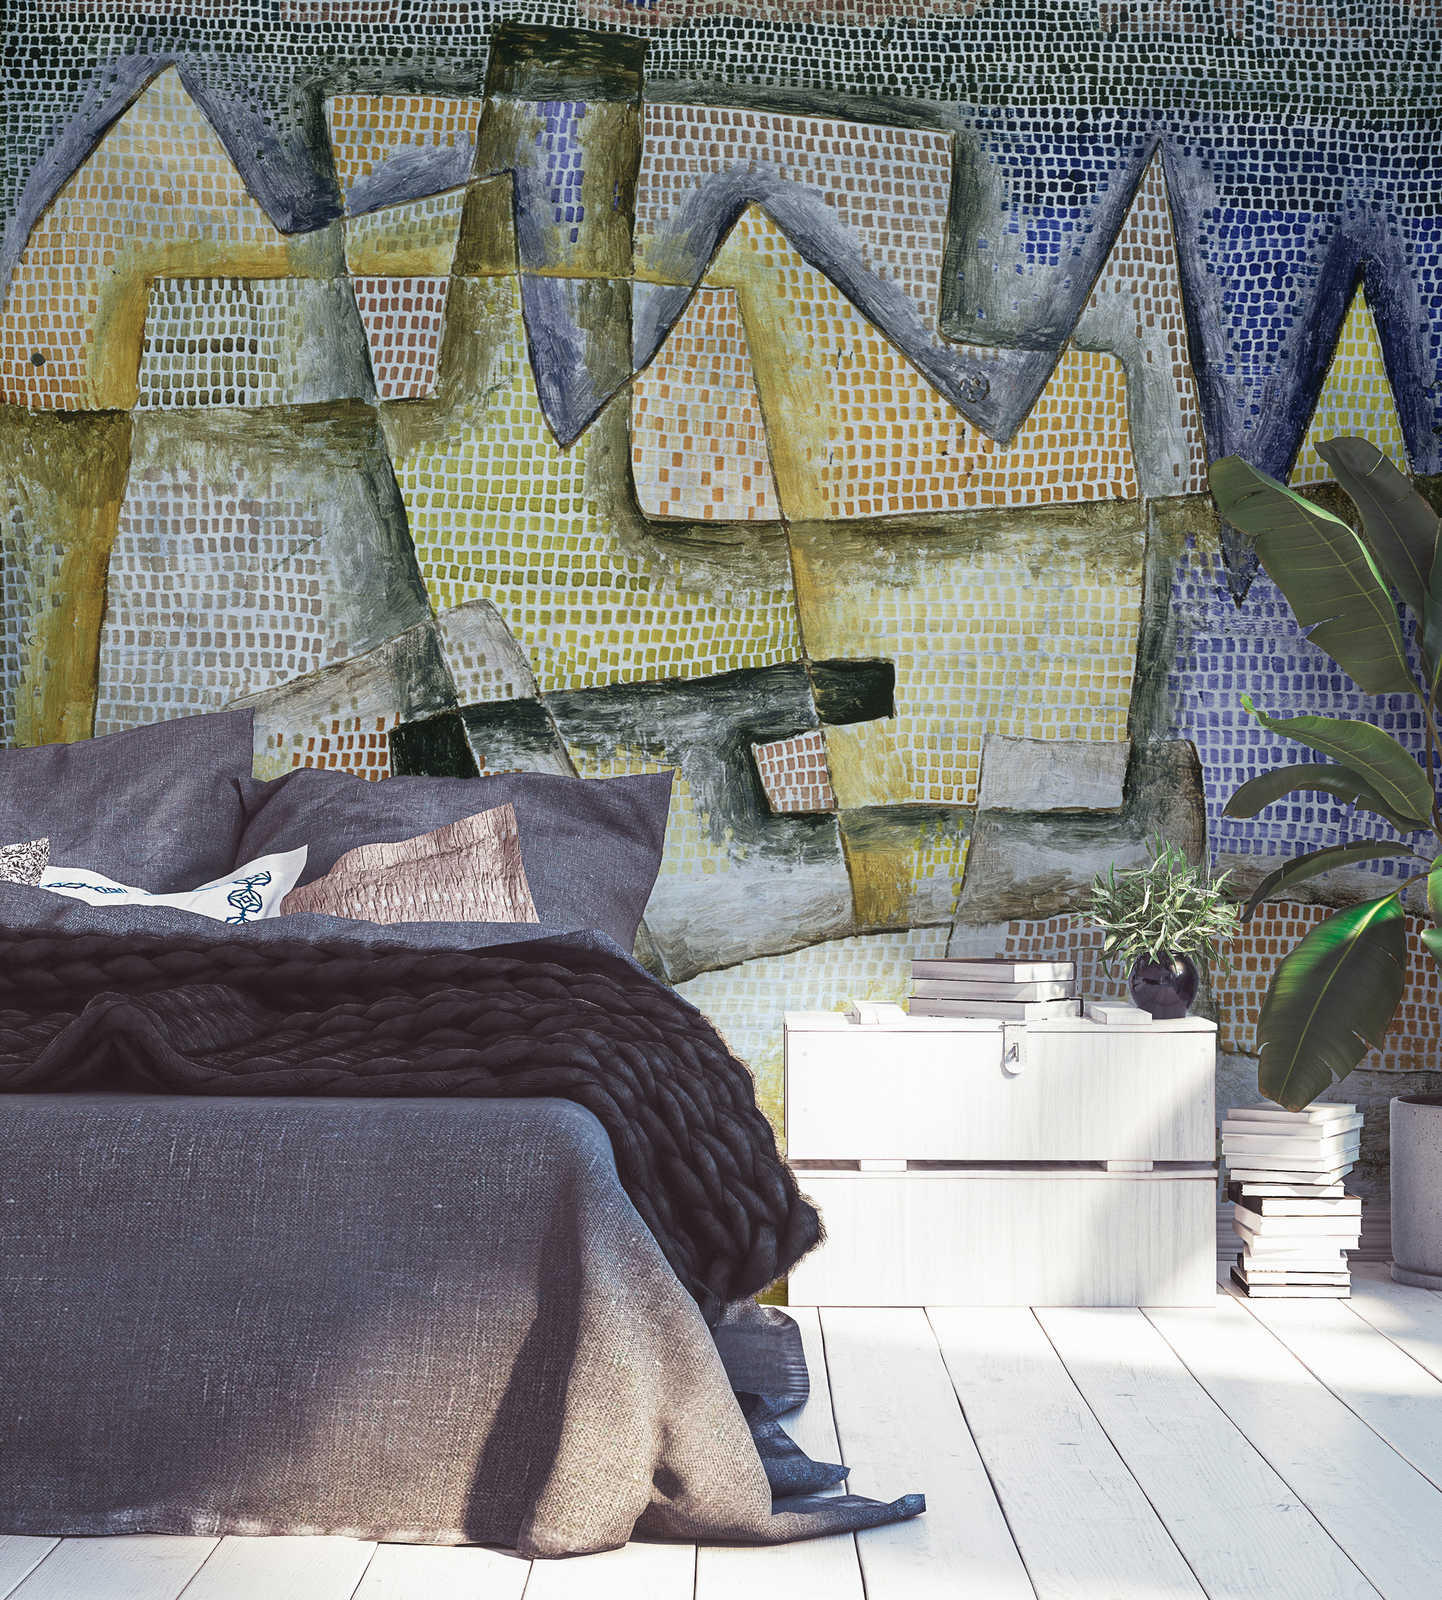             Papier peint panoramique "Côte rocheuse" de Paul Klee
        